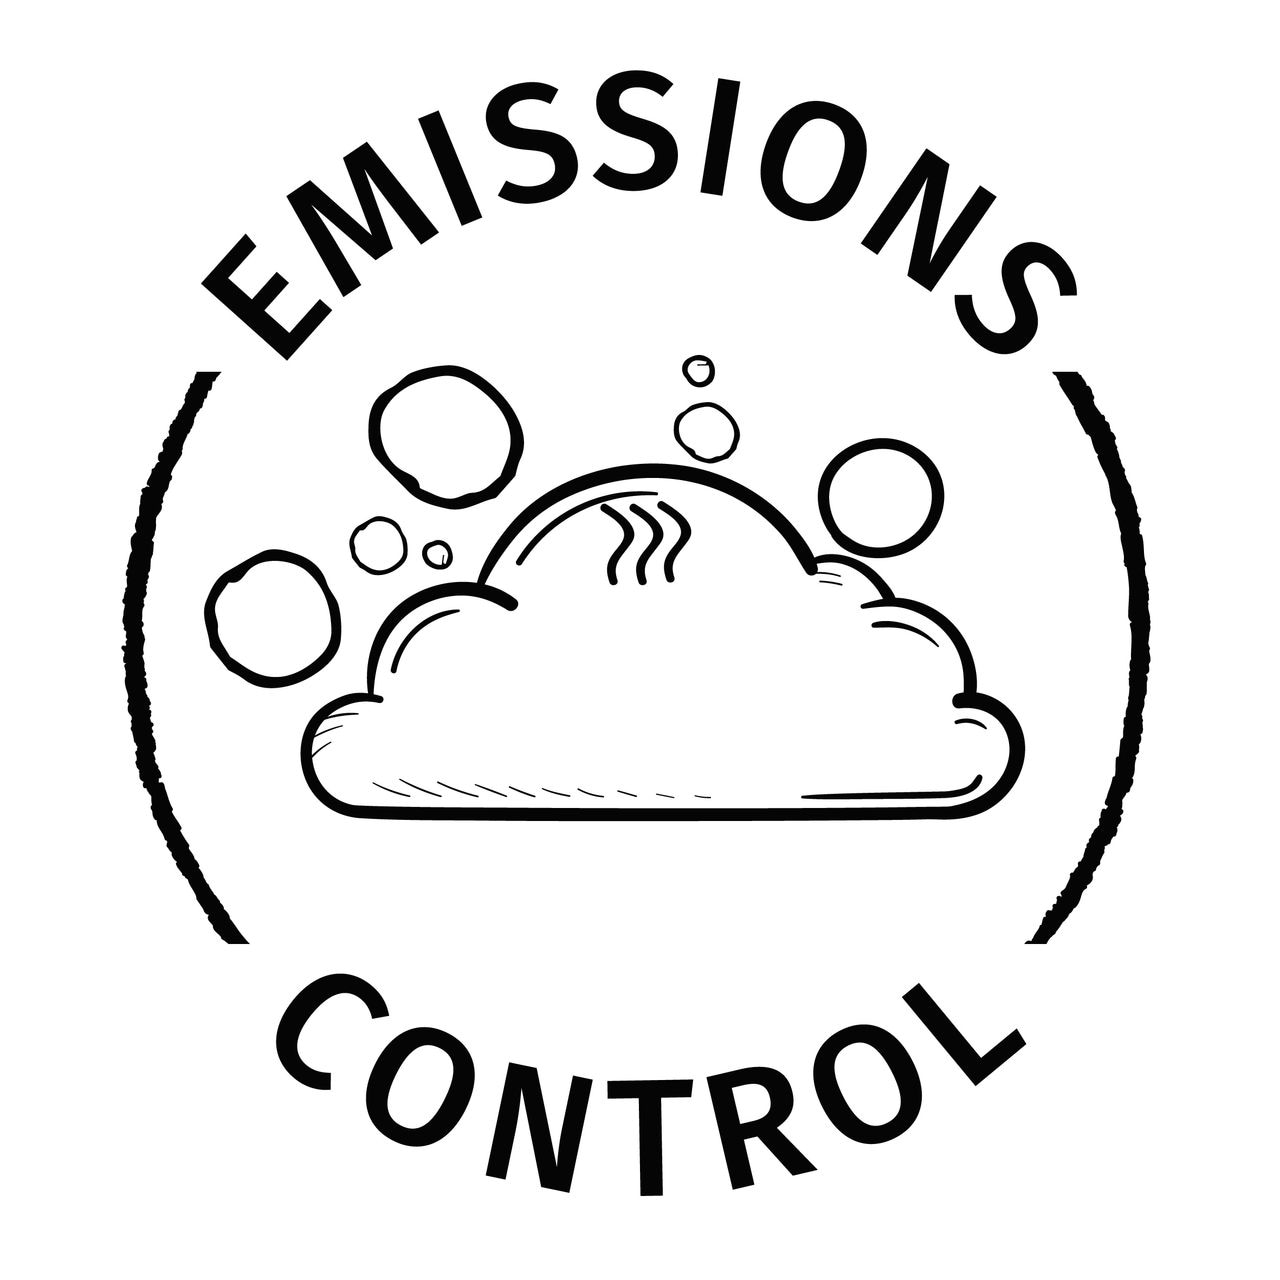 Emissions control